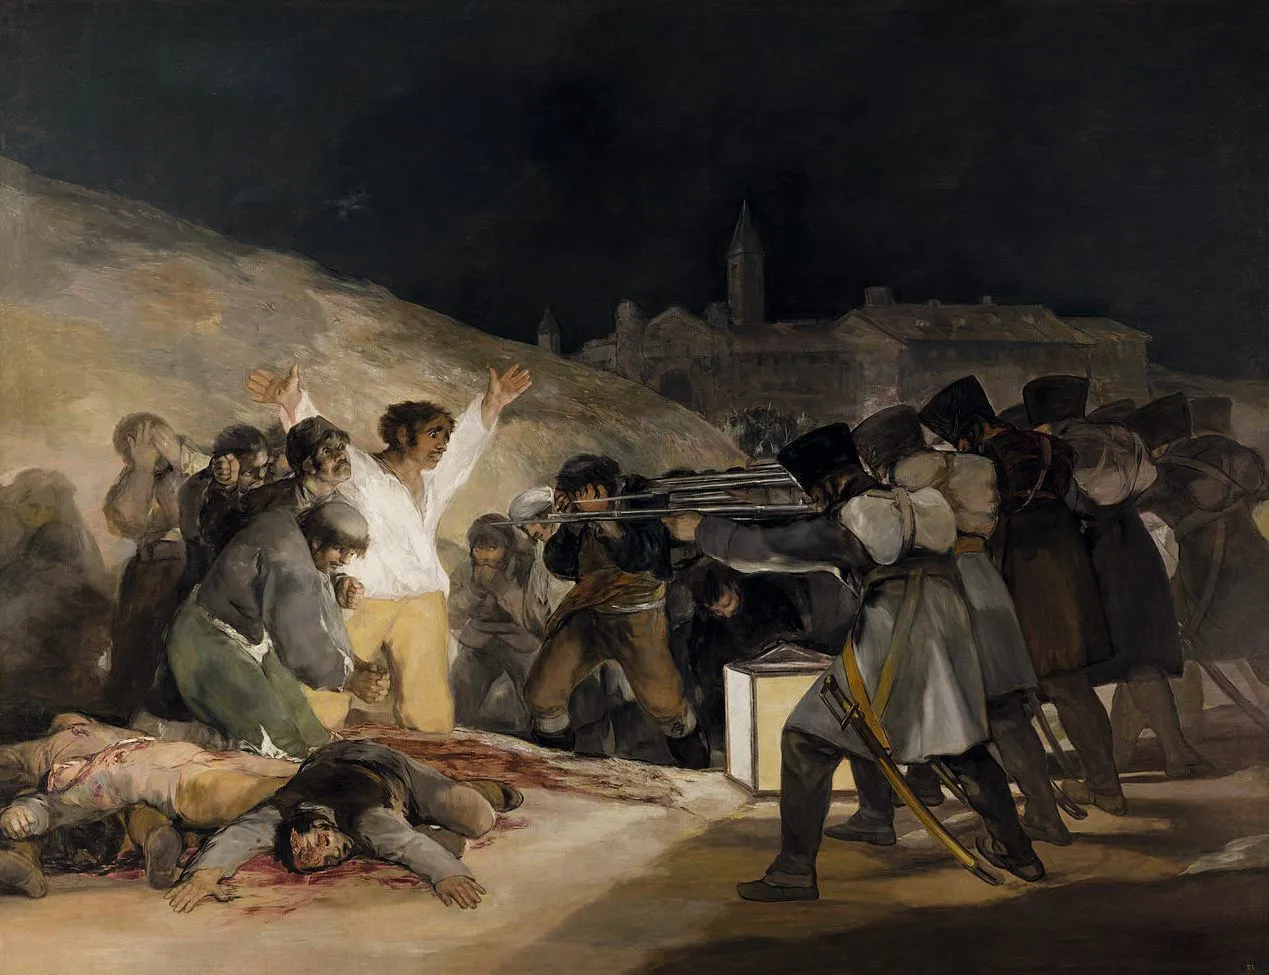 Francisco de Goya, El tres de mayo de 1808 en Madrid (le trois mai 1808
à Madrid), 1814, huile sur toile, 266 × 345 cm, musée du Prado, Madrid.